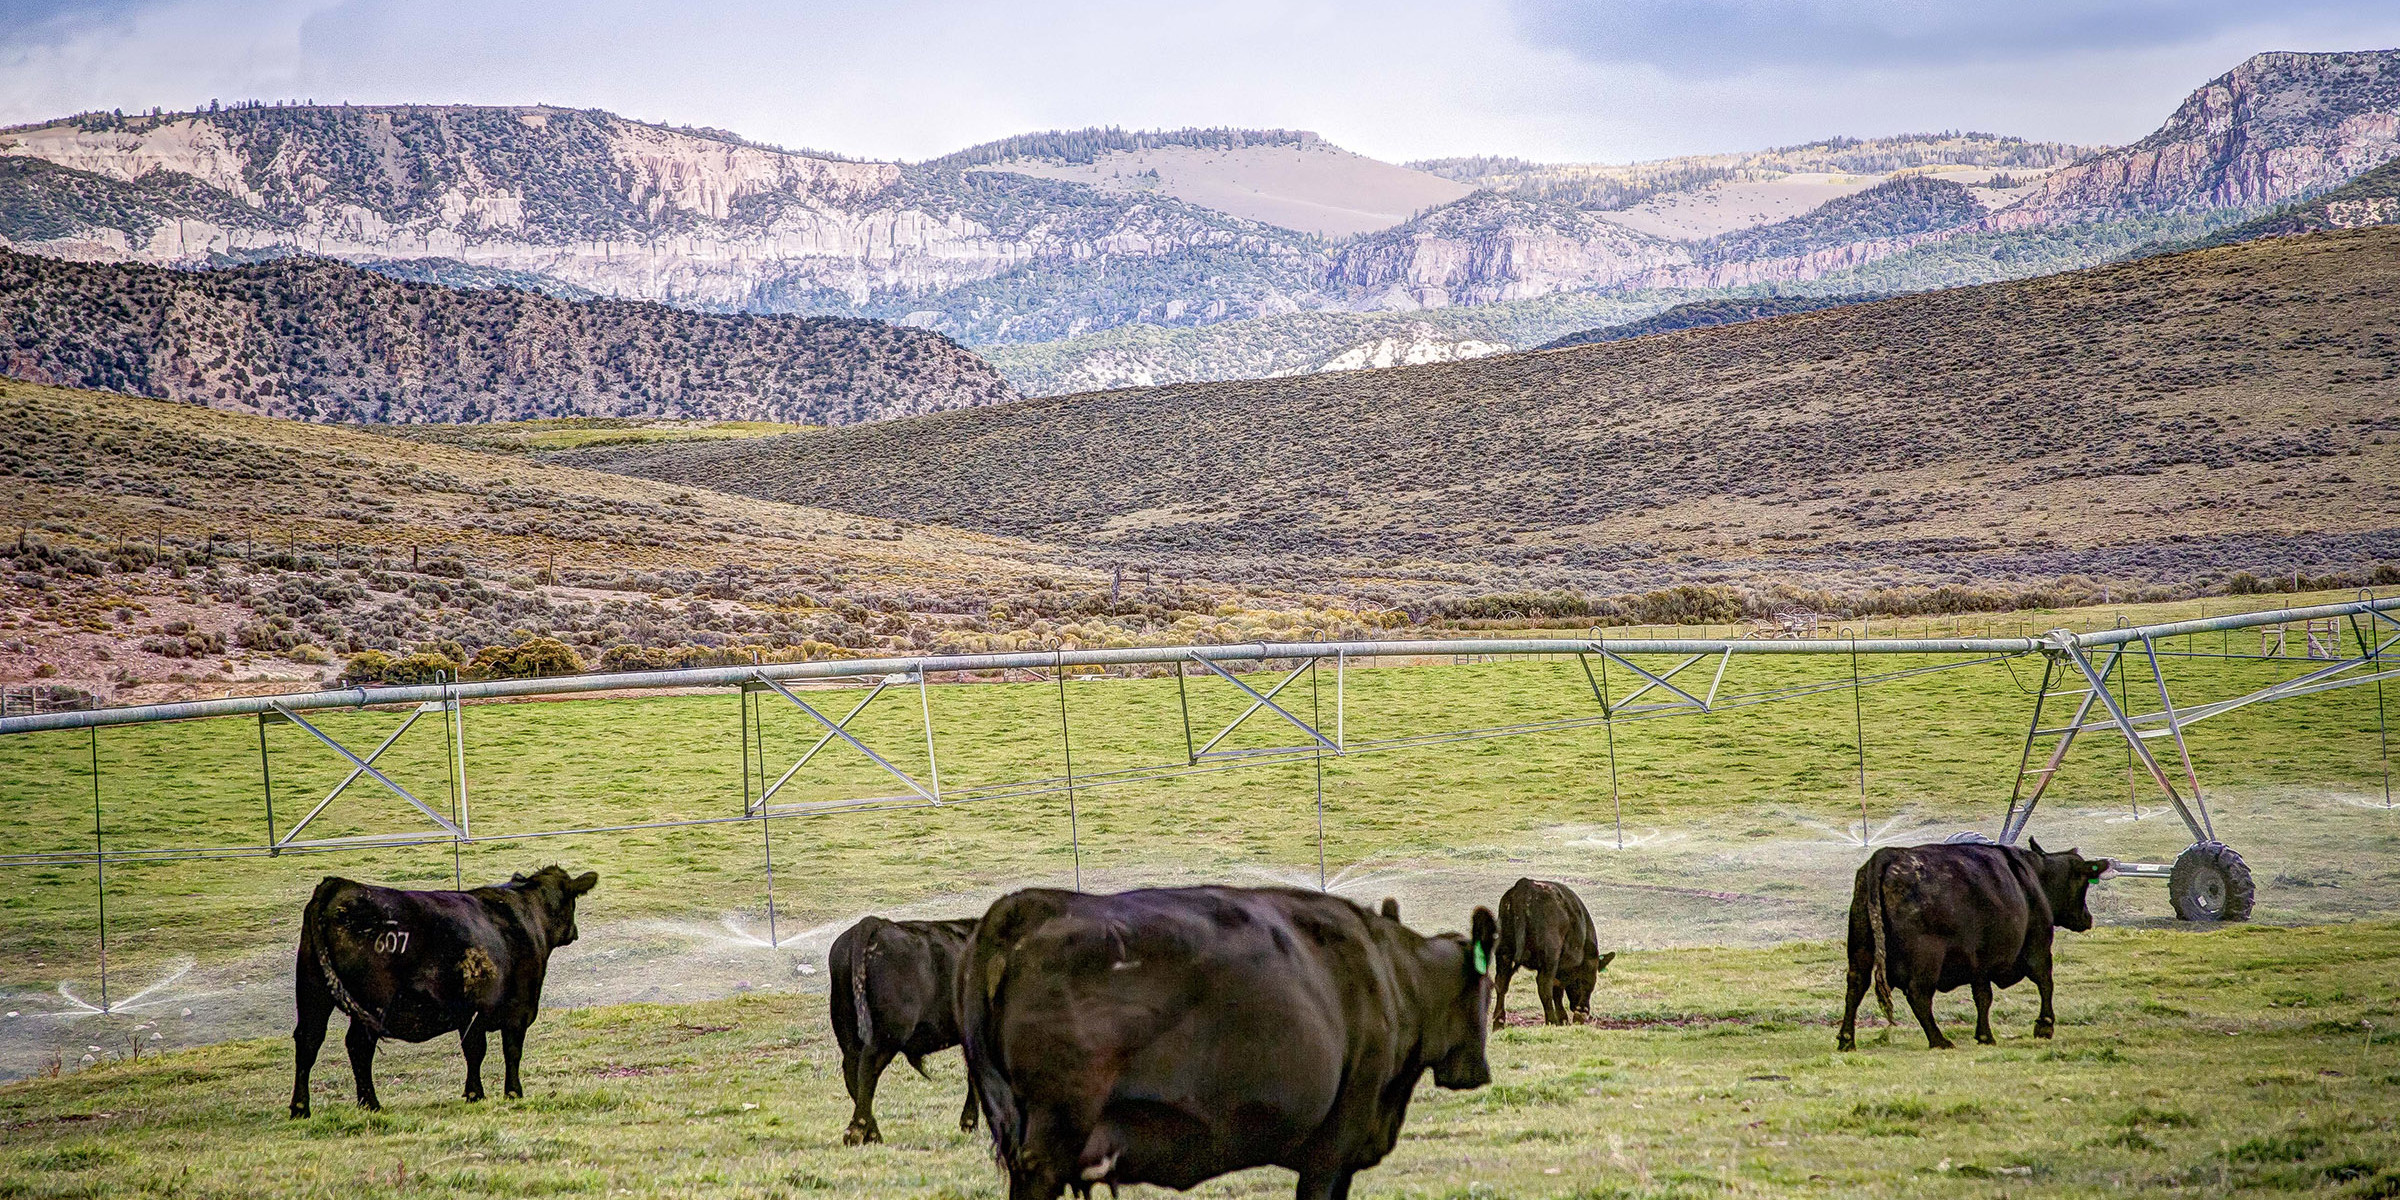 Livestock on ranchette in Alimony, Utah